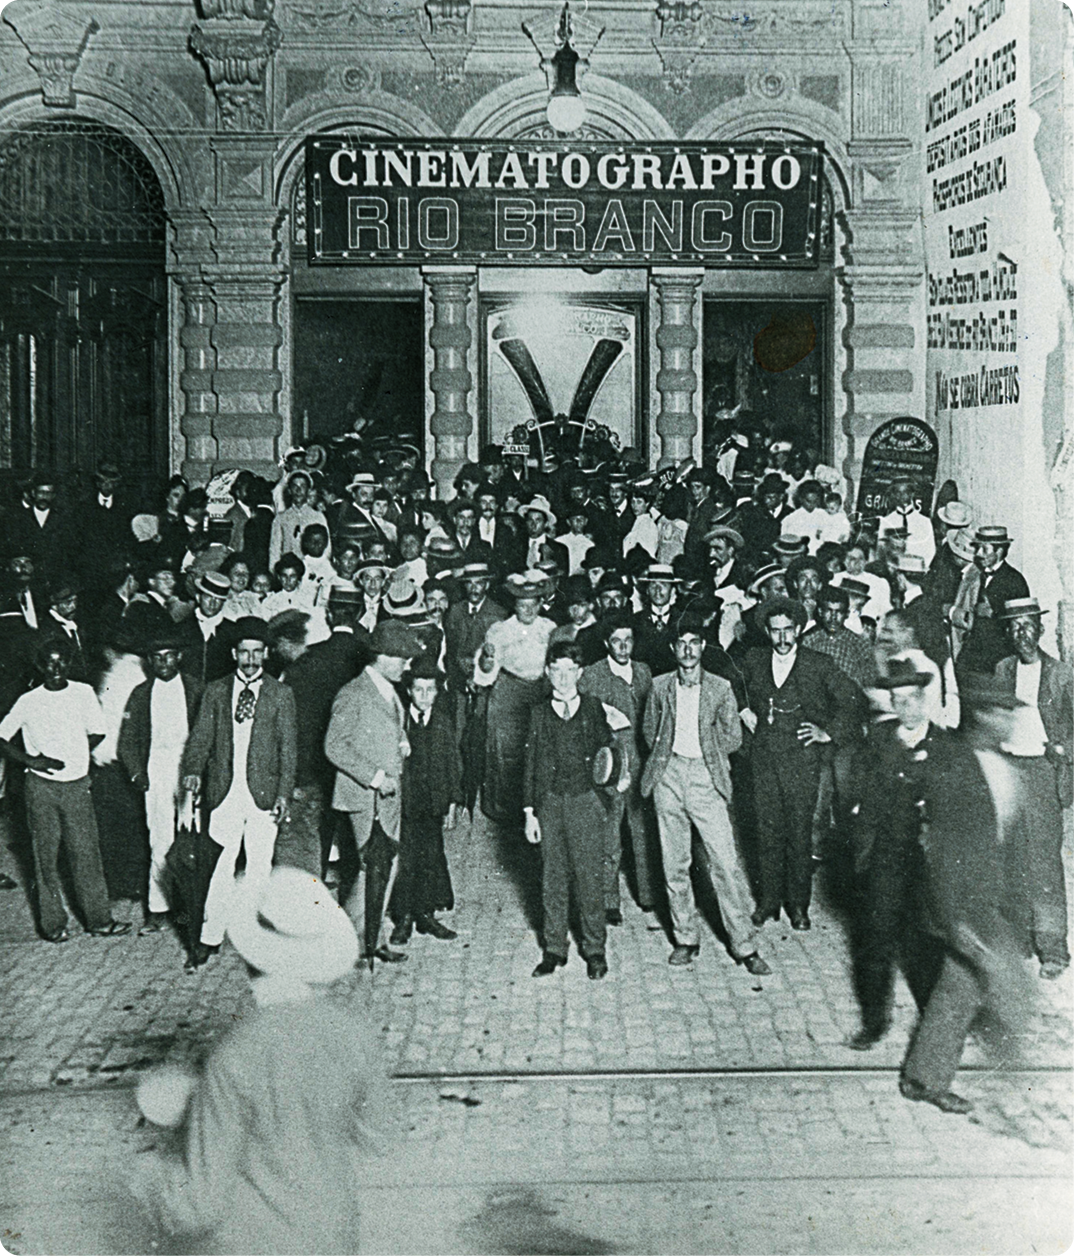 Fotografia em preto e branco. Várias pessoas em pé, muitas delas vestindo terno e chapéu. Atrás, cartaz com o texto: CINEMATOGRAPHO.